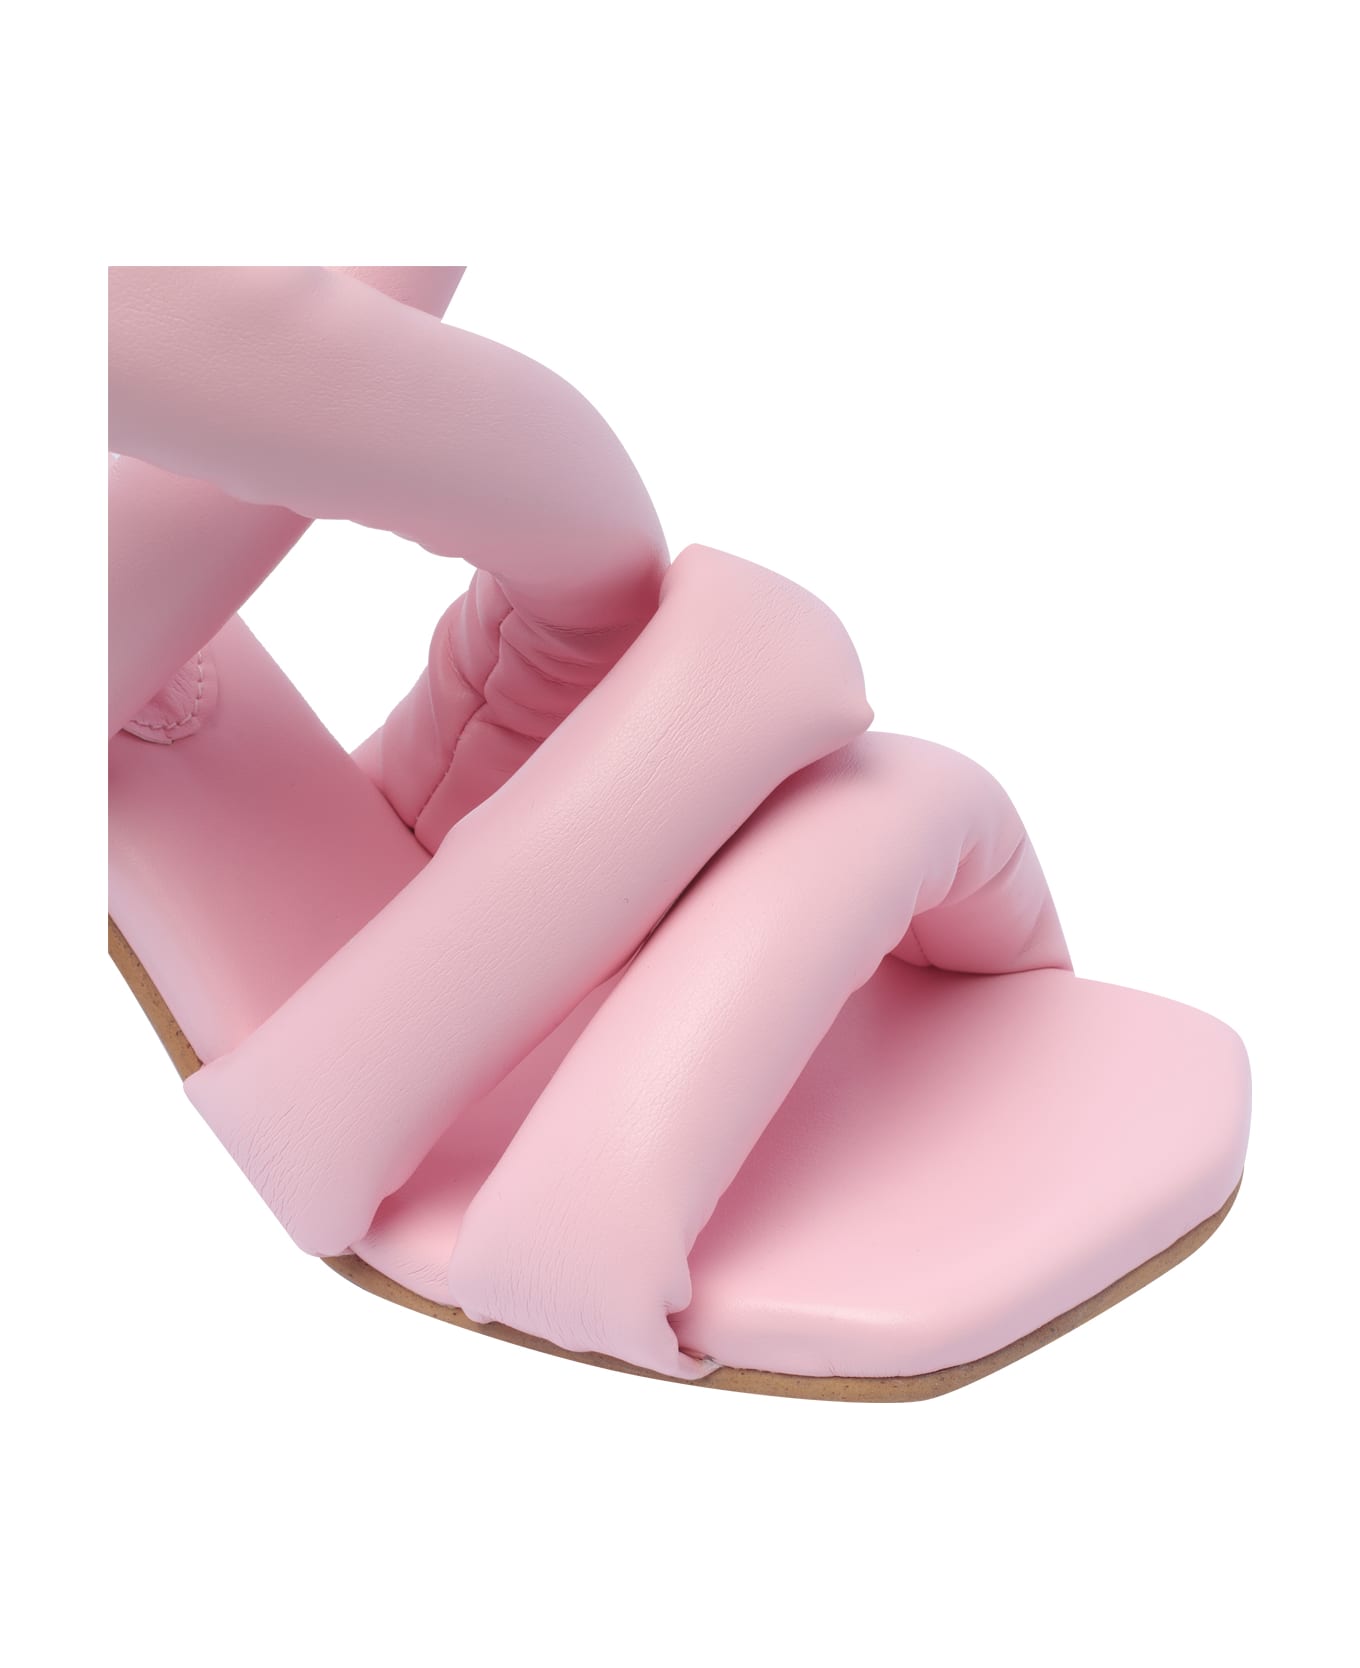 YUME YUME Circular Pump Sandals - Pink サンダル